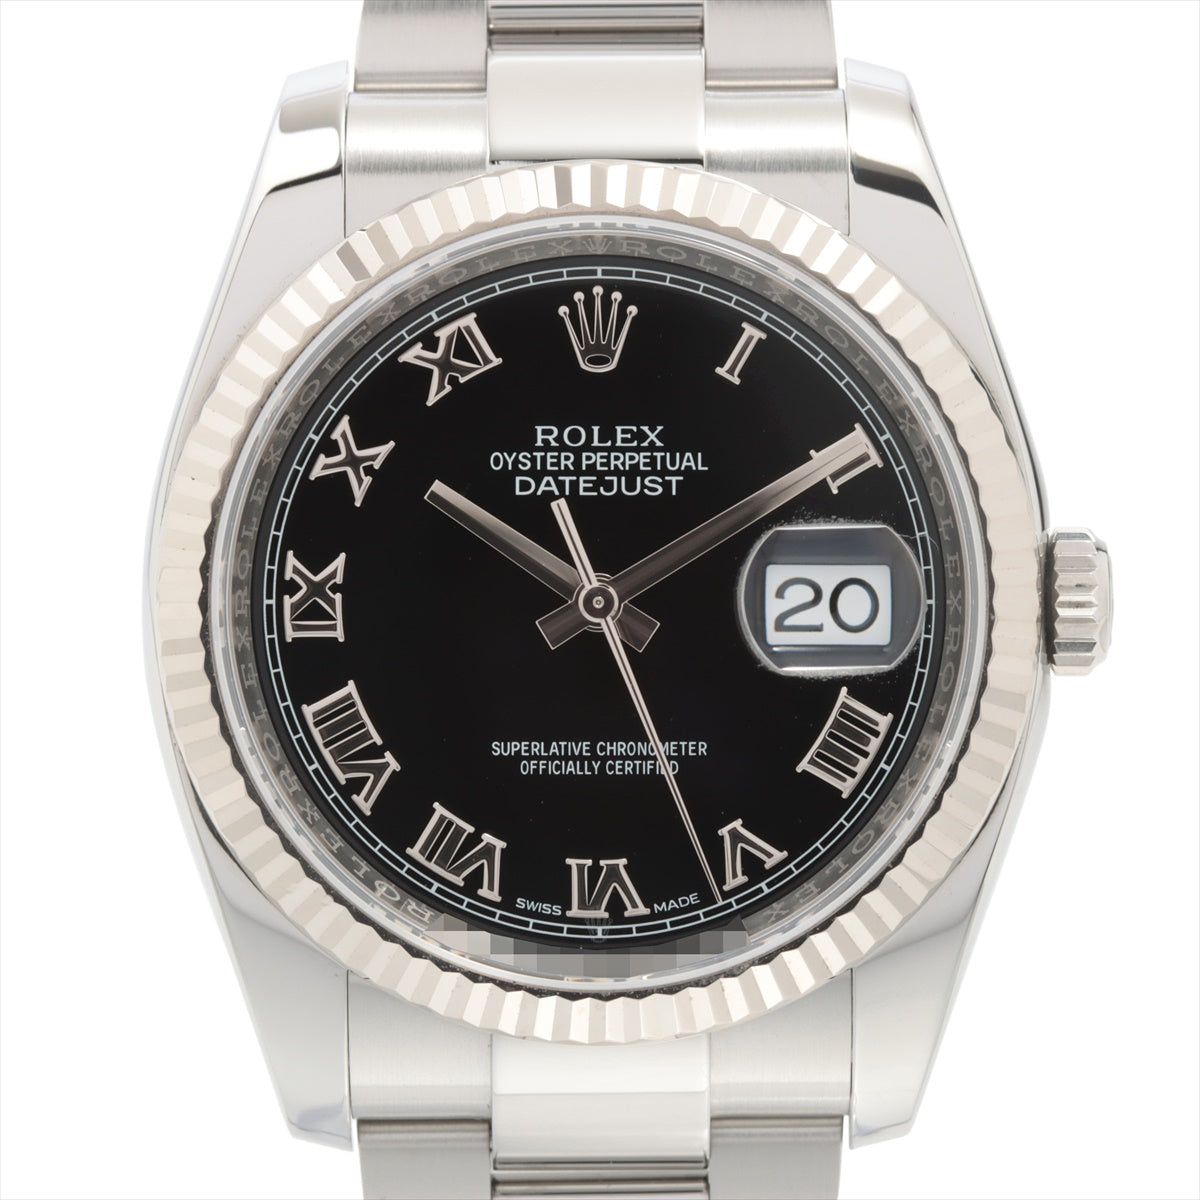 ROLEX ロレックス デイトジャスト 116234 黒文字盤 メンズ 腕時計